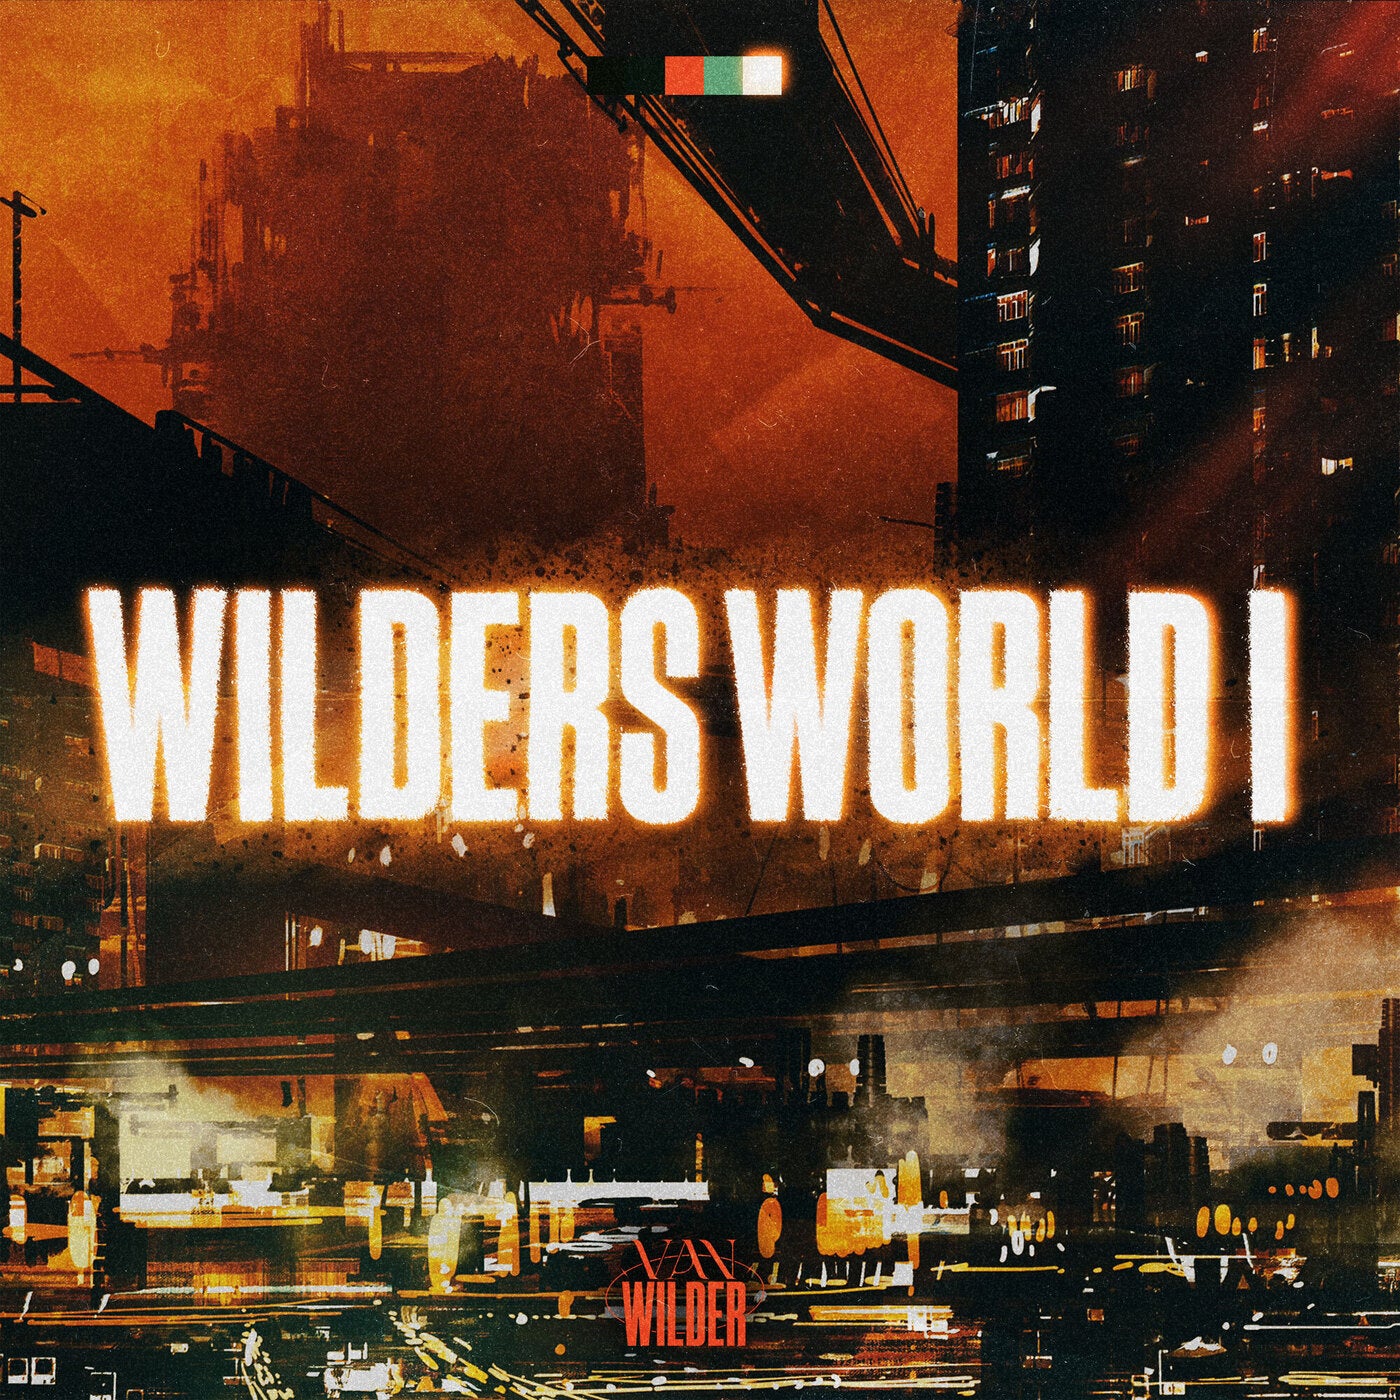 Wilder's World I